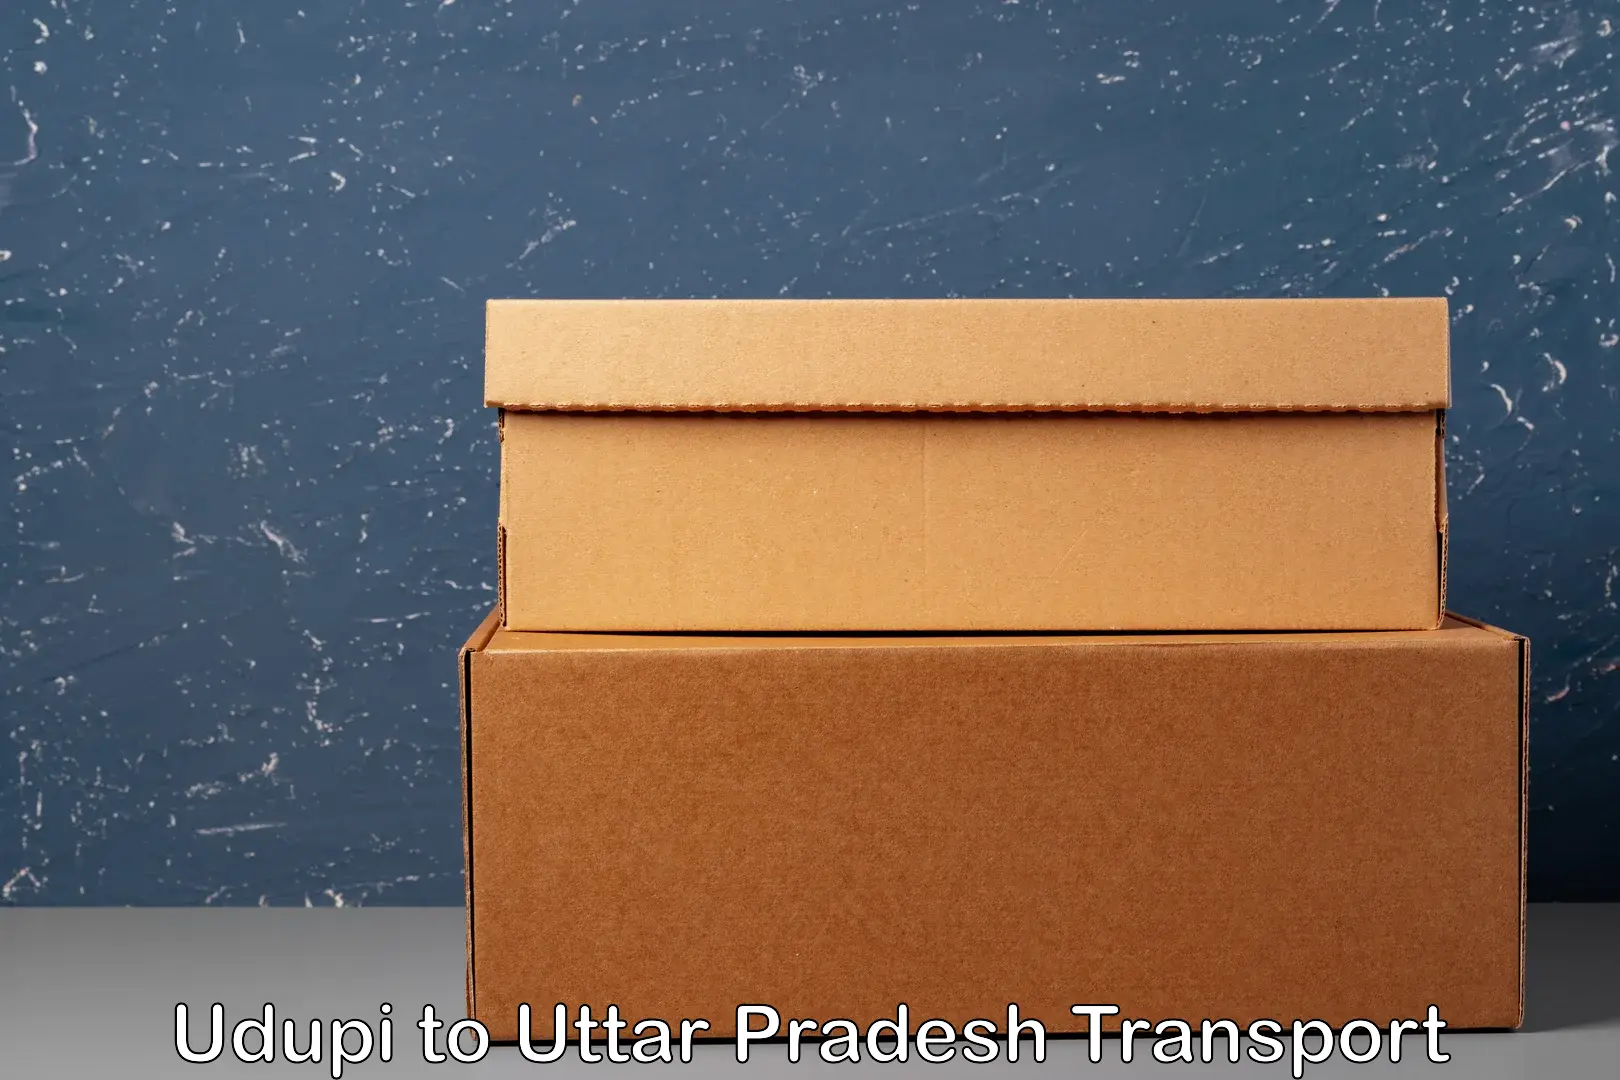 Transport services Udupi to Uttar Pradesh